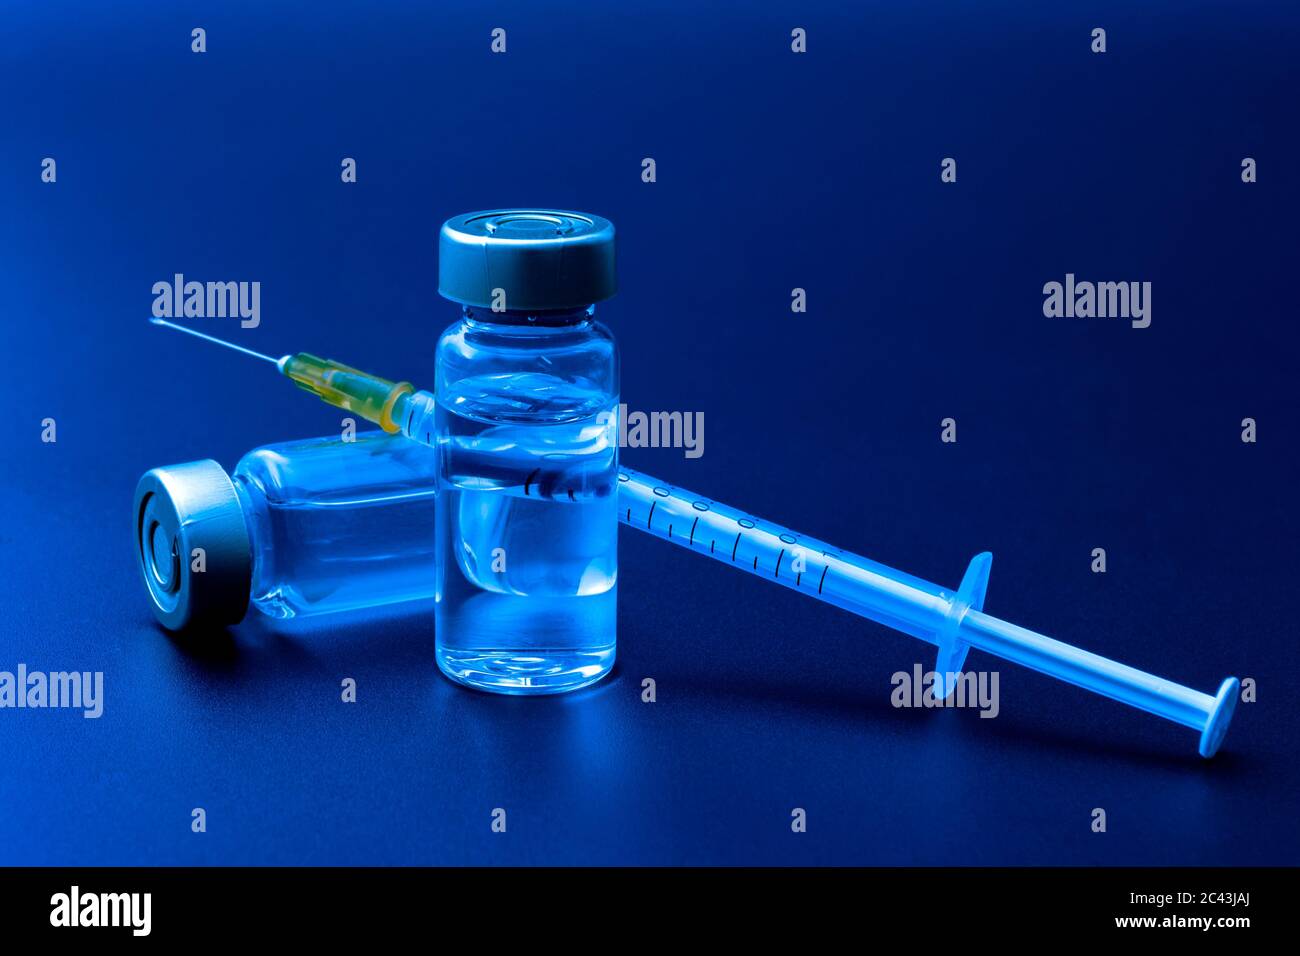 Impfstoffe, Botulinumtoxin und Insulinampullen – Konzeptthema mit Glasfläschchen mit klarer Flüssigkeit neben einer Spritze und einer auf b isolierten hypodermischen Nadel Stockfoto